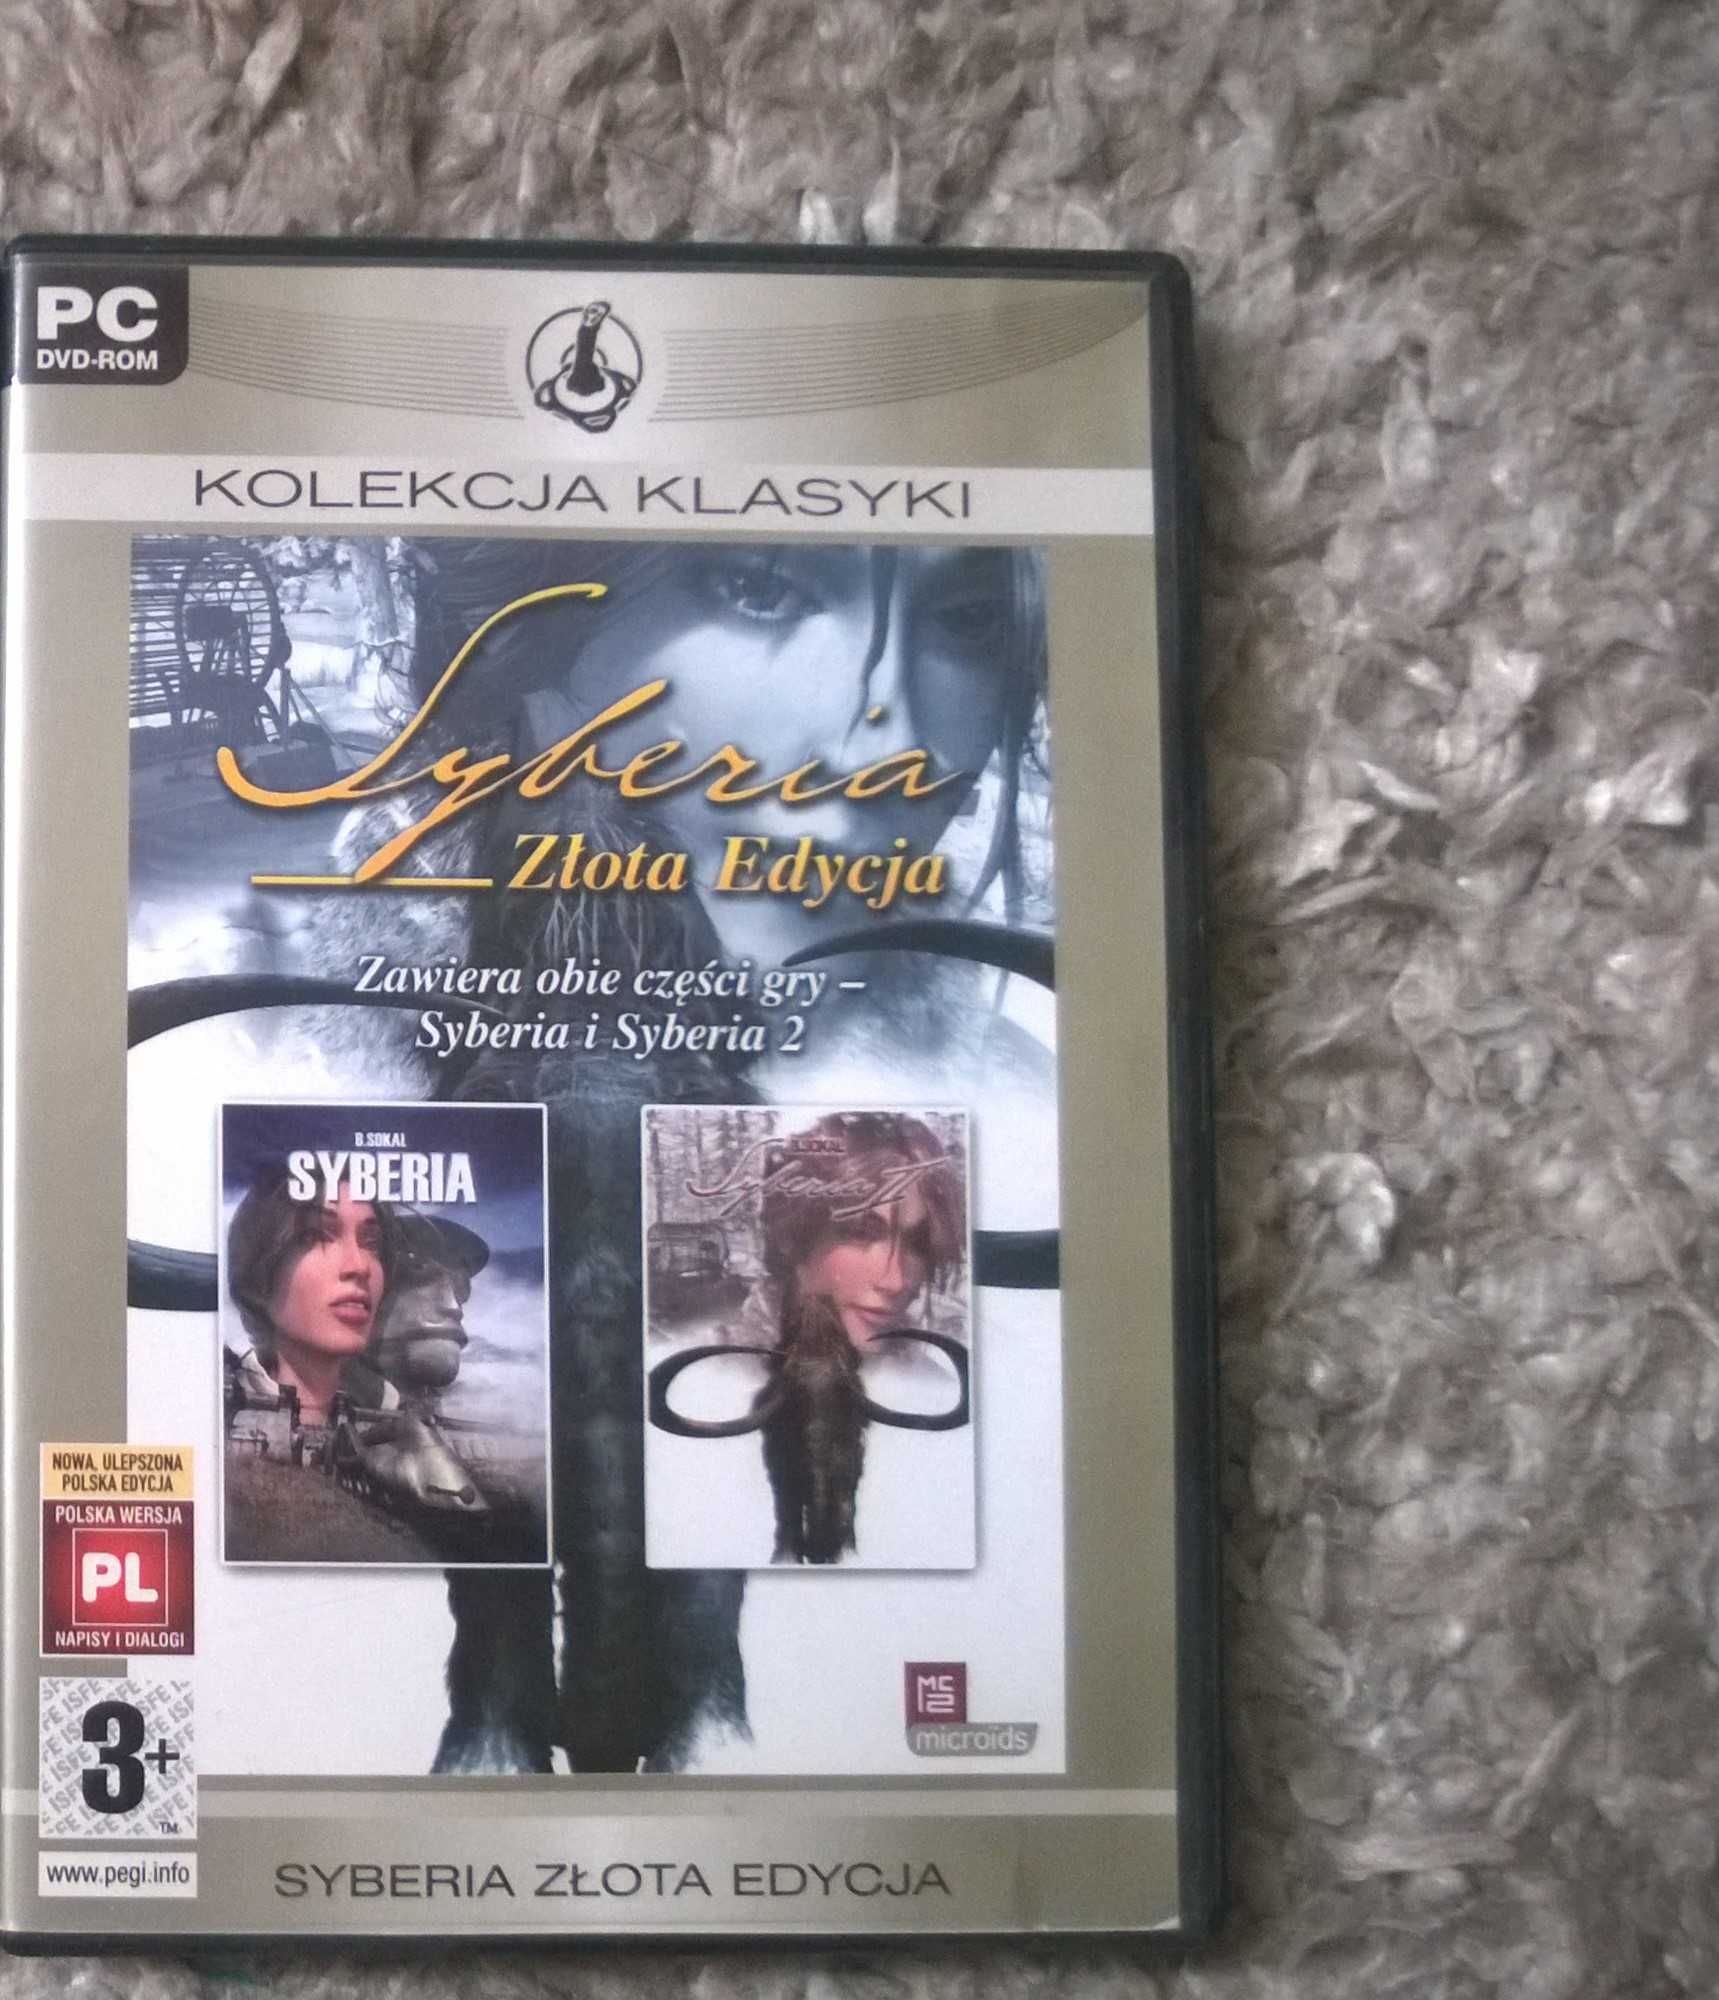 Syberia złota edycja kolekcja klasyki gra PC